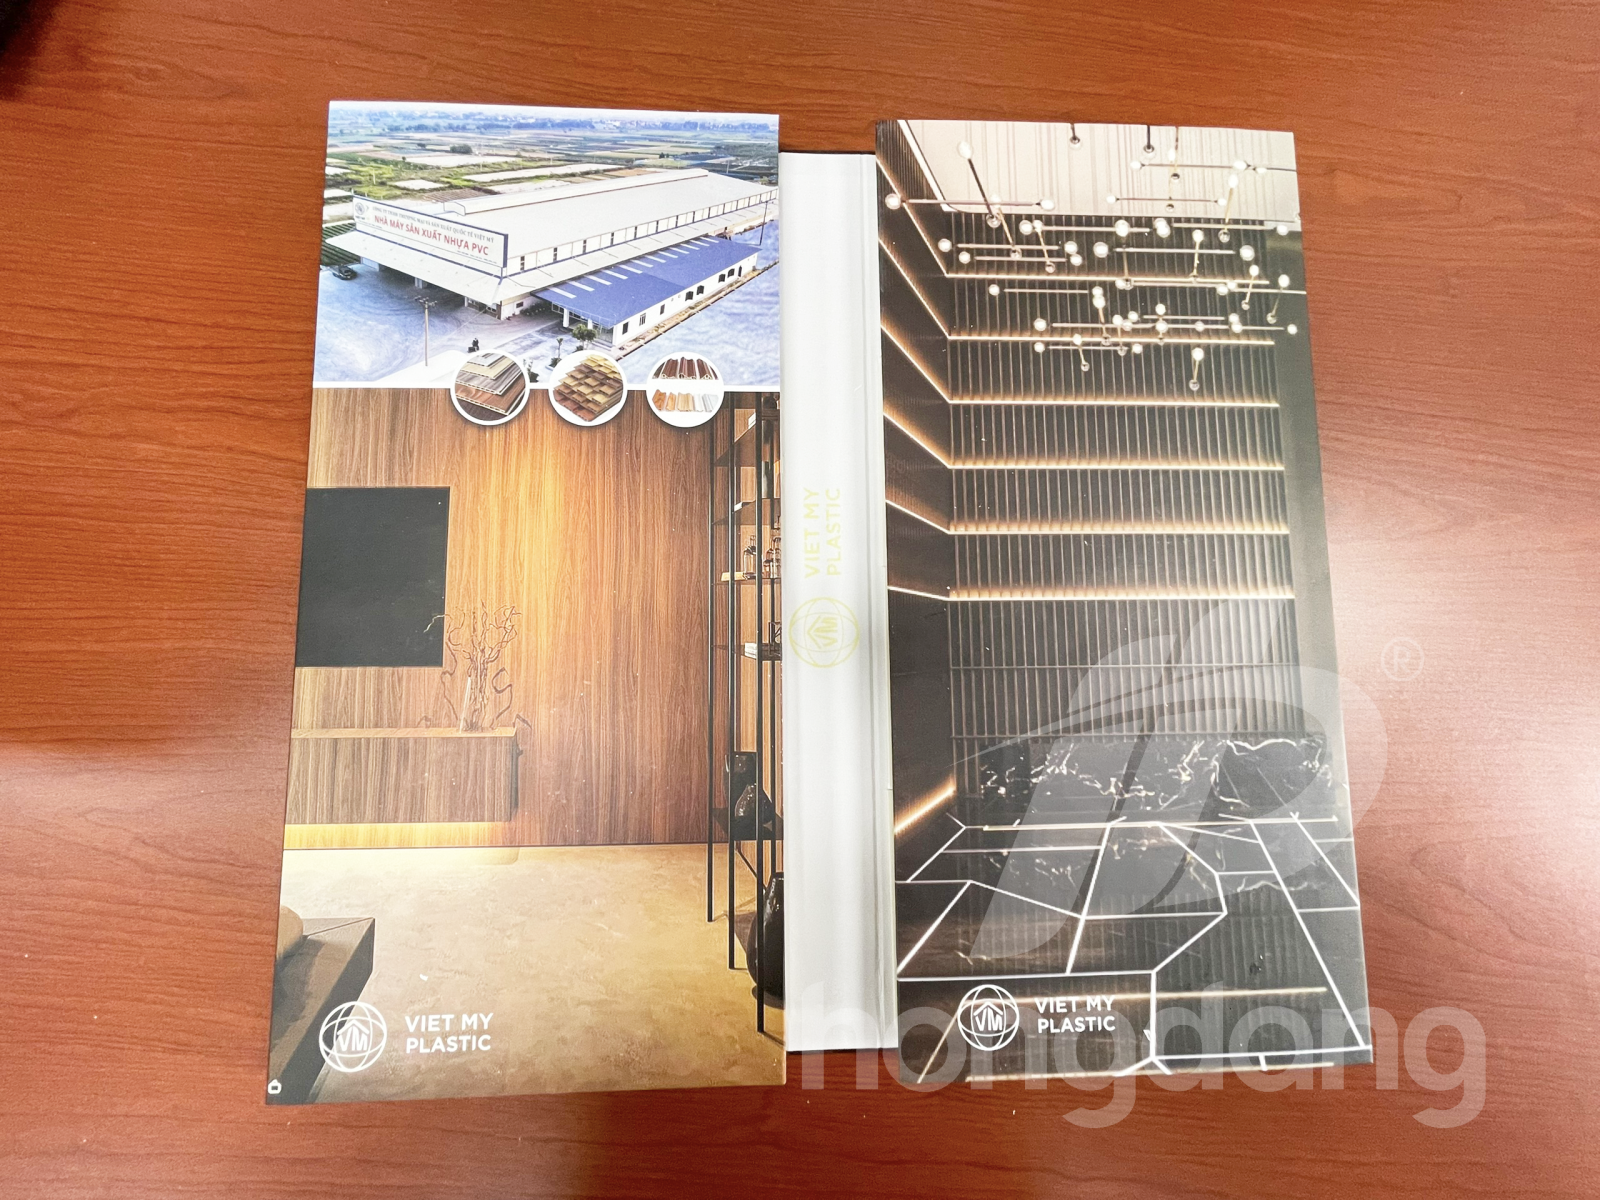 In Catalogue sàn nhựa, sàn gỗ và các mẫu vật liệu xây dựng